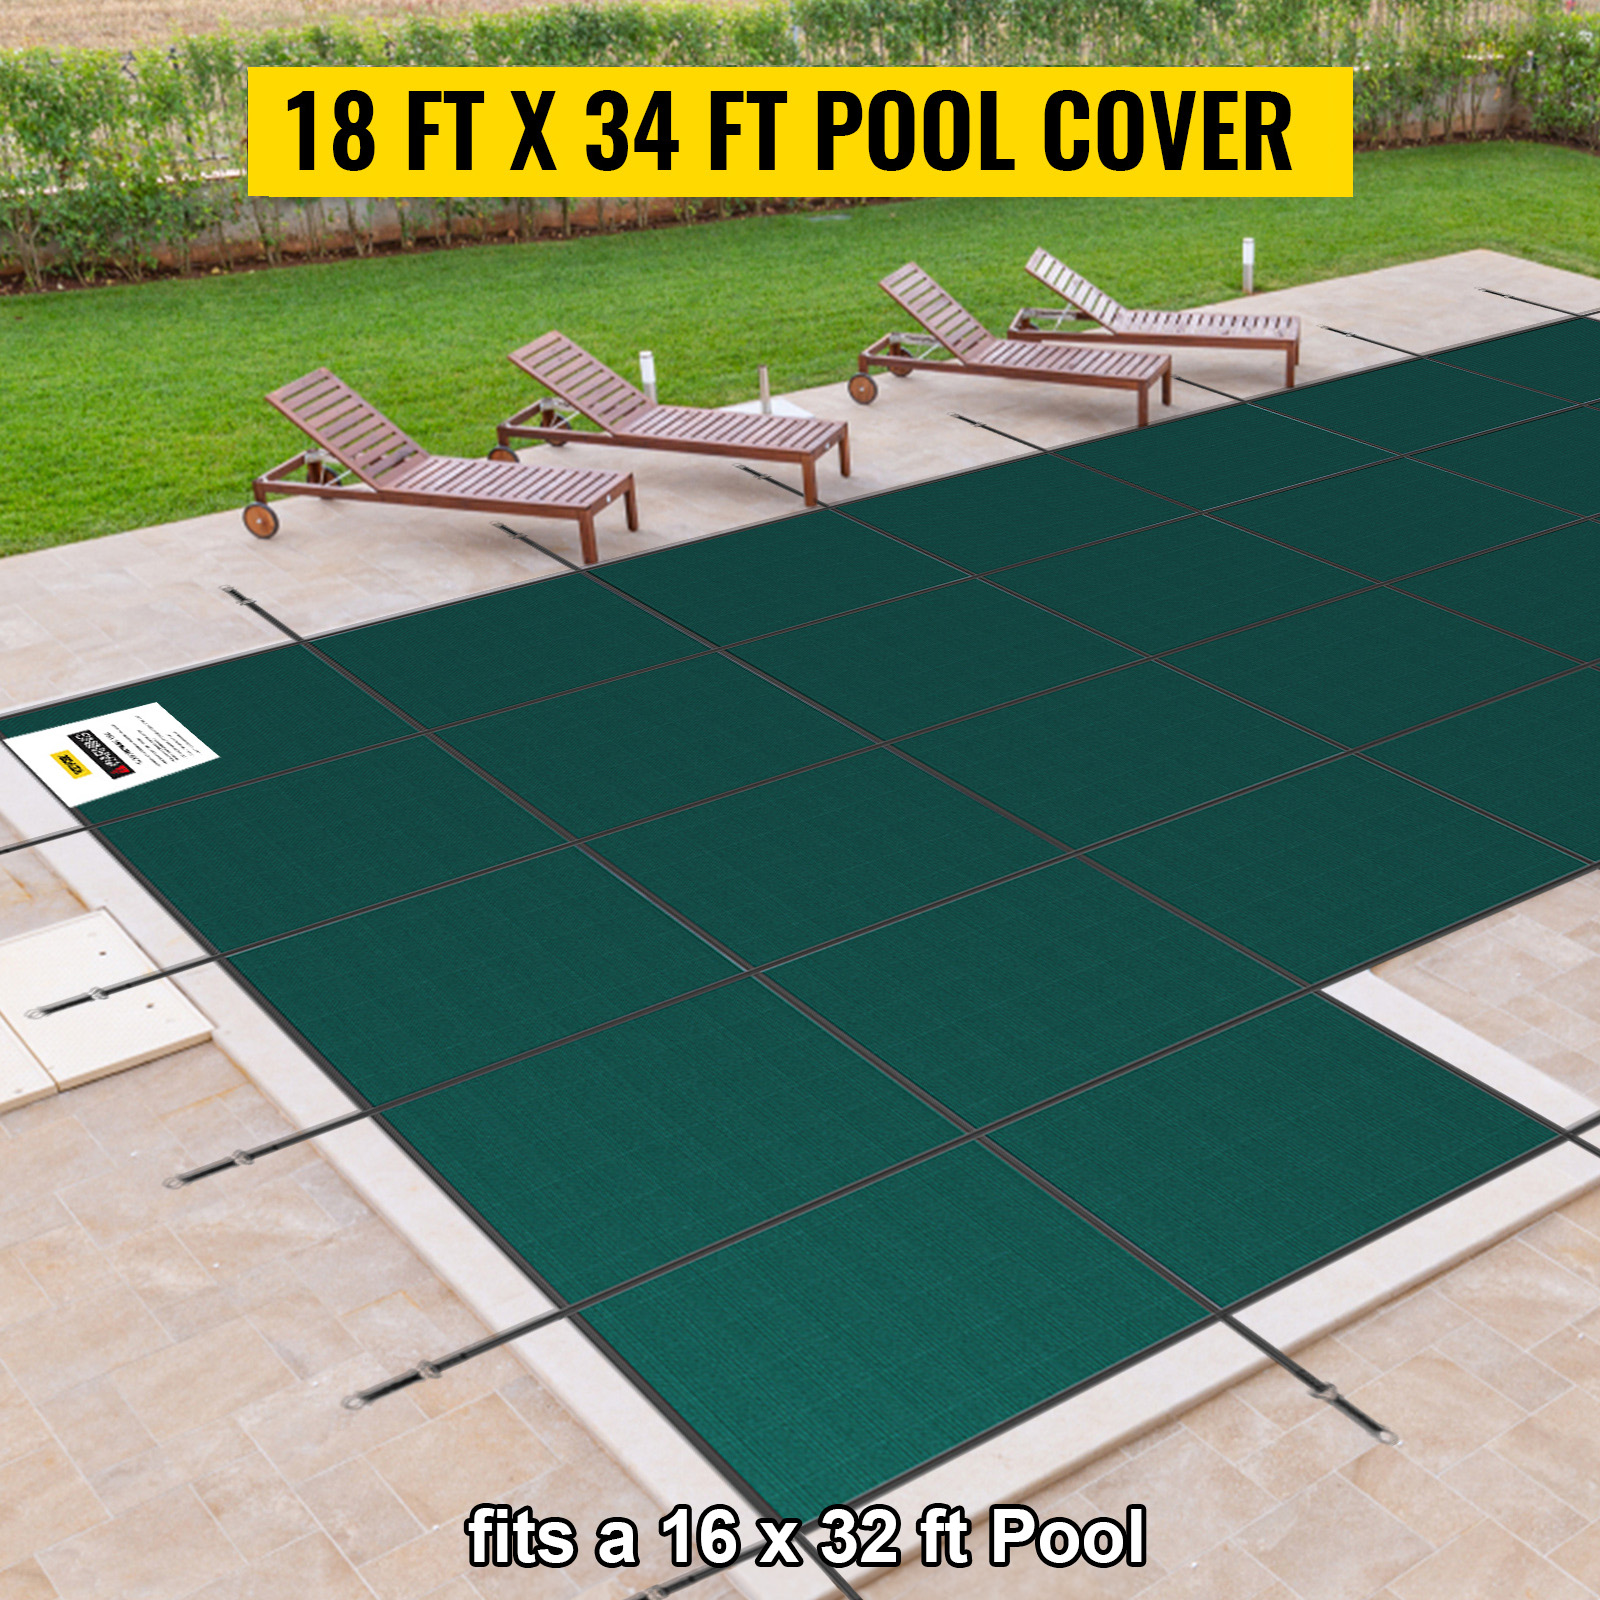 VEVOR Inground Pool Safety Cover, 18 ft x 34 ft Rectangular Winter